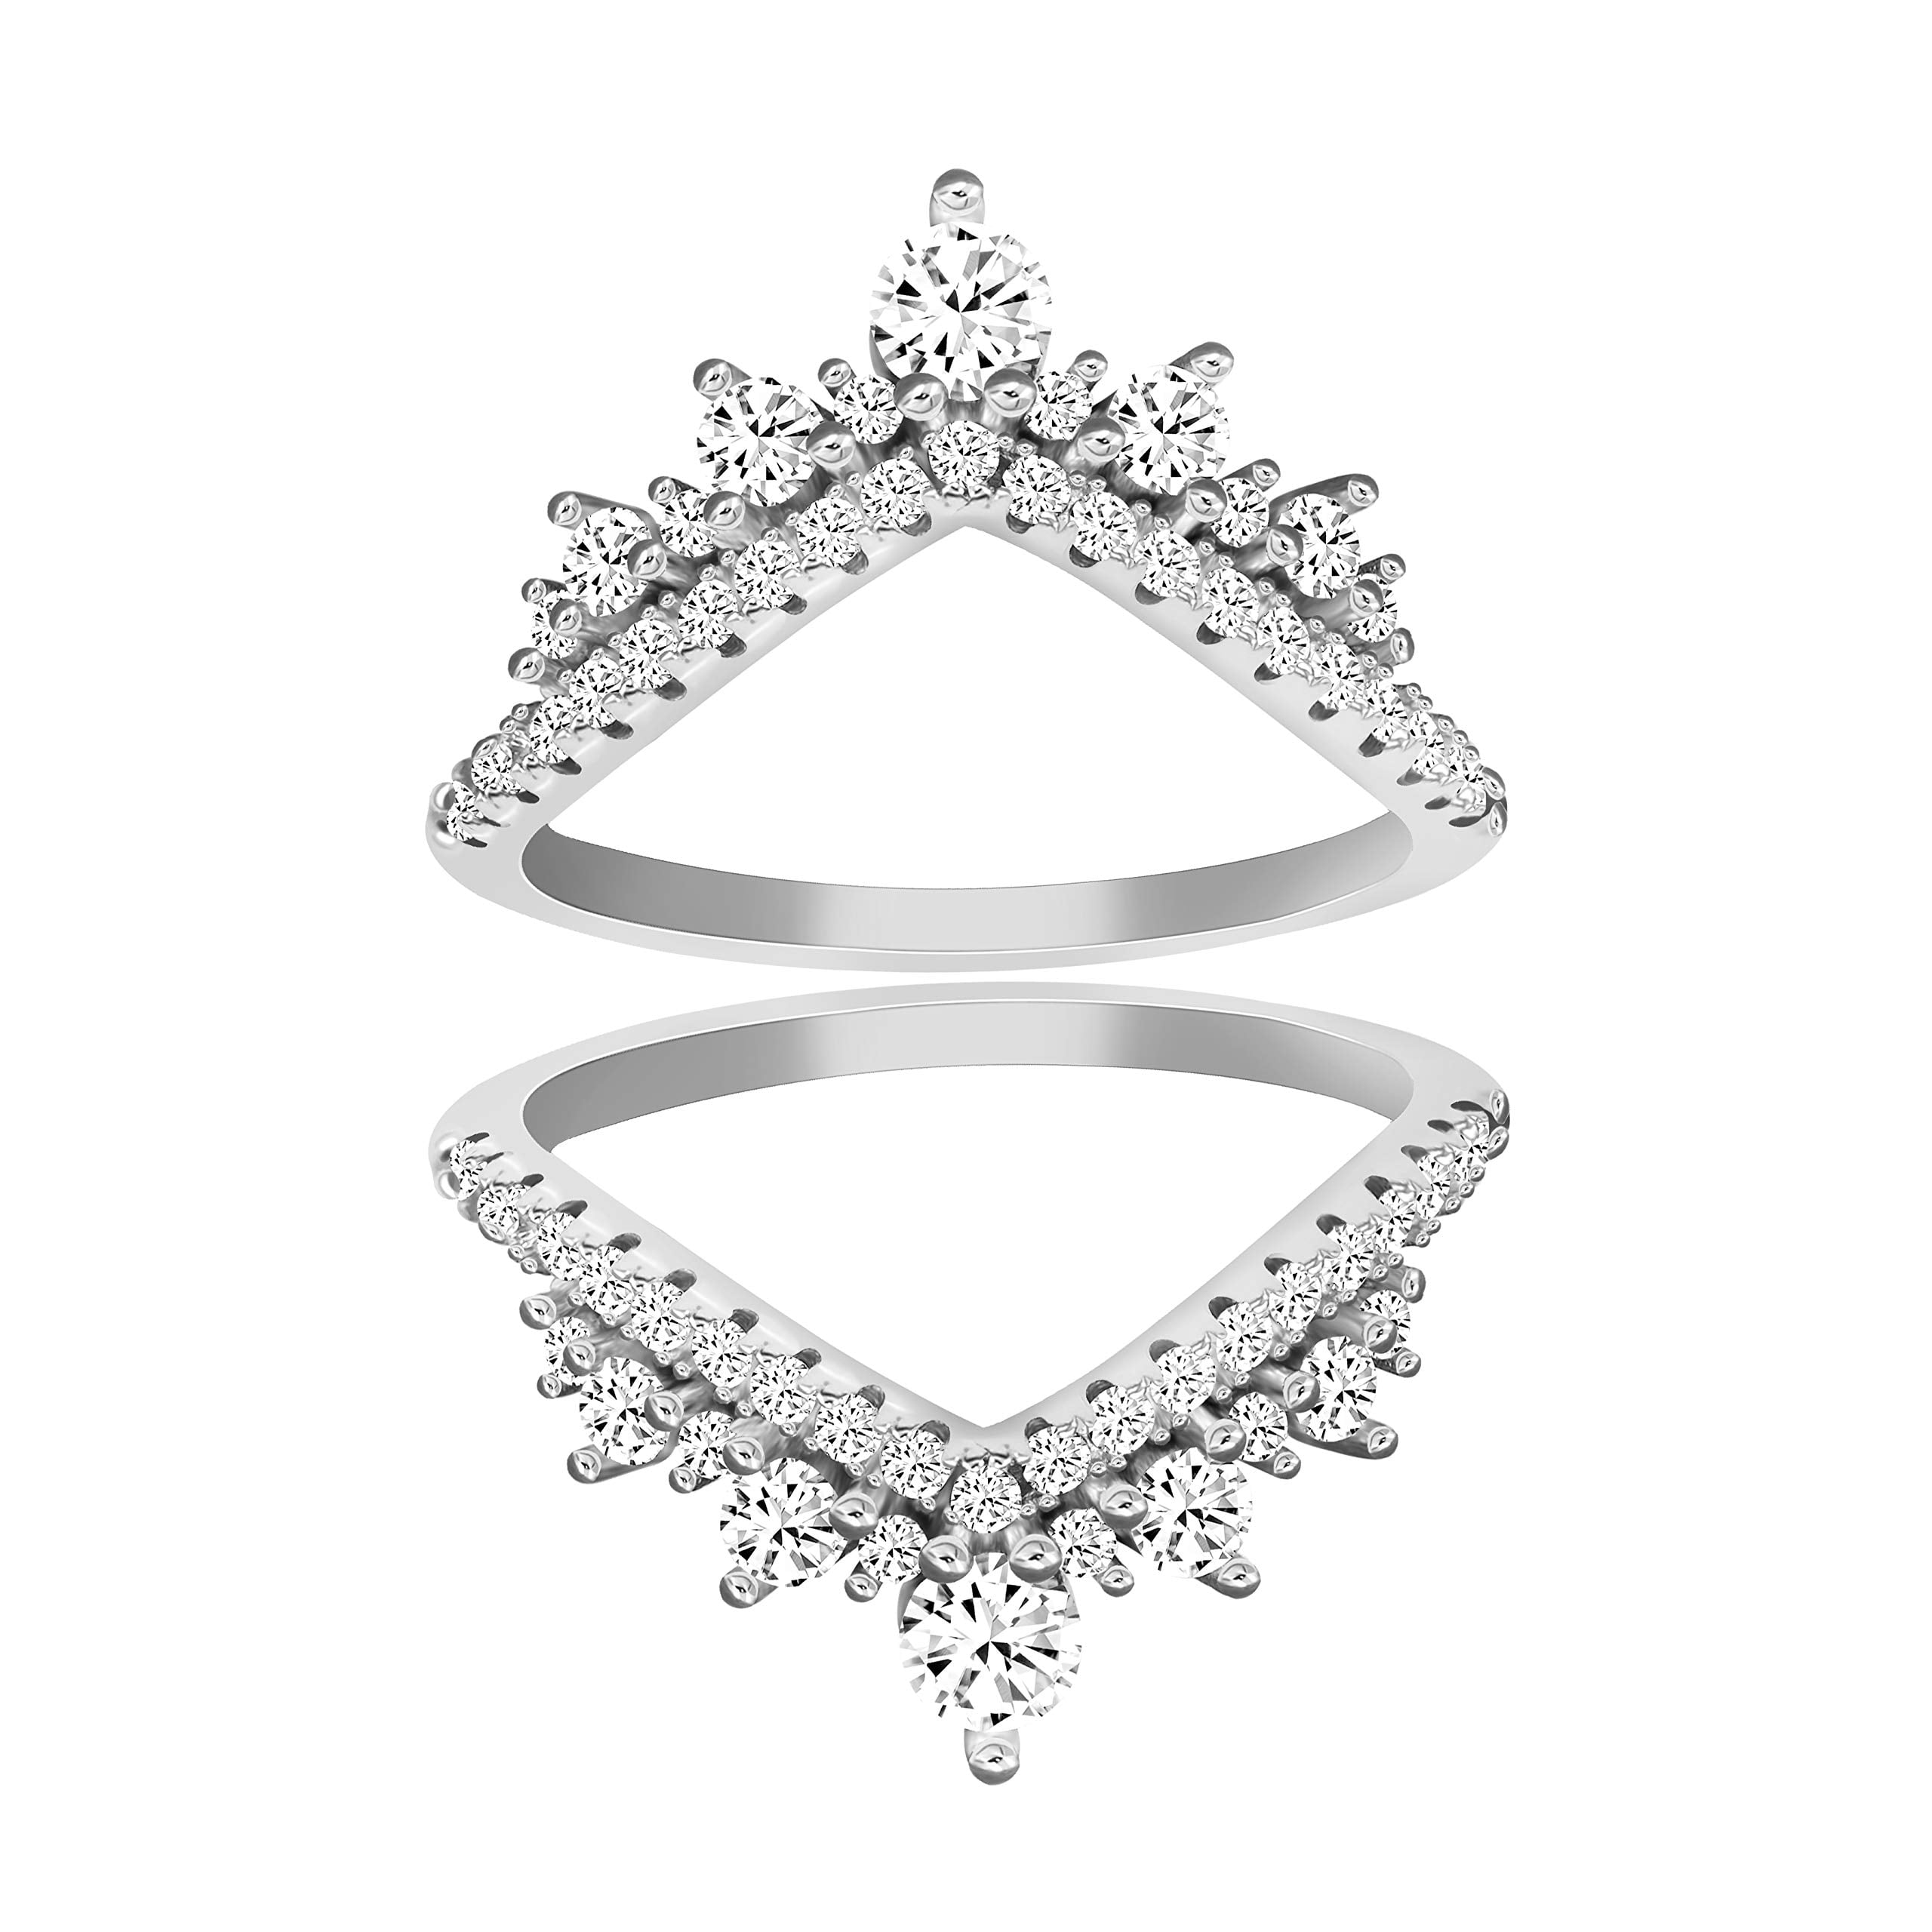 Uloveido 925 Sterling Silver Princess Crown Tiara Filigree Ring Guard Enhancer 2pcs Stack Rings Set for Women